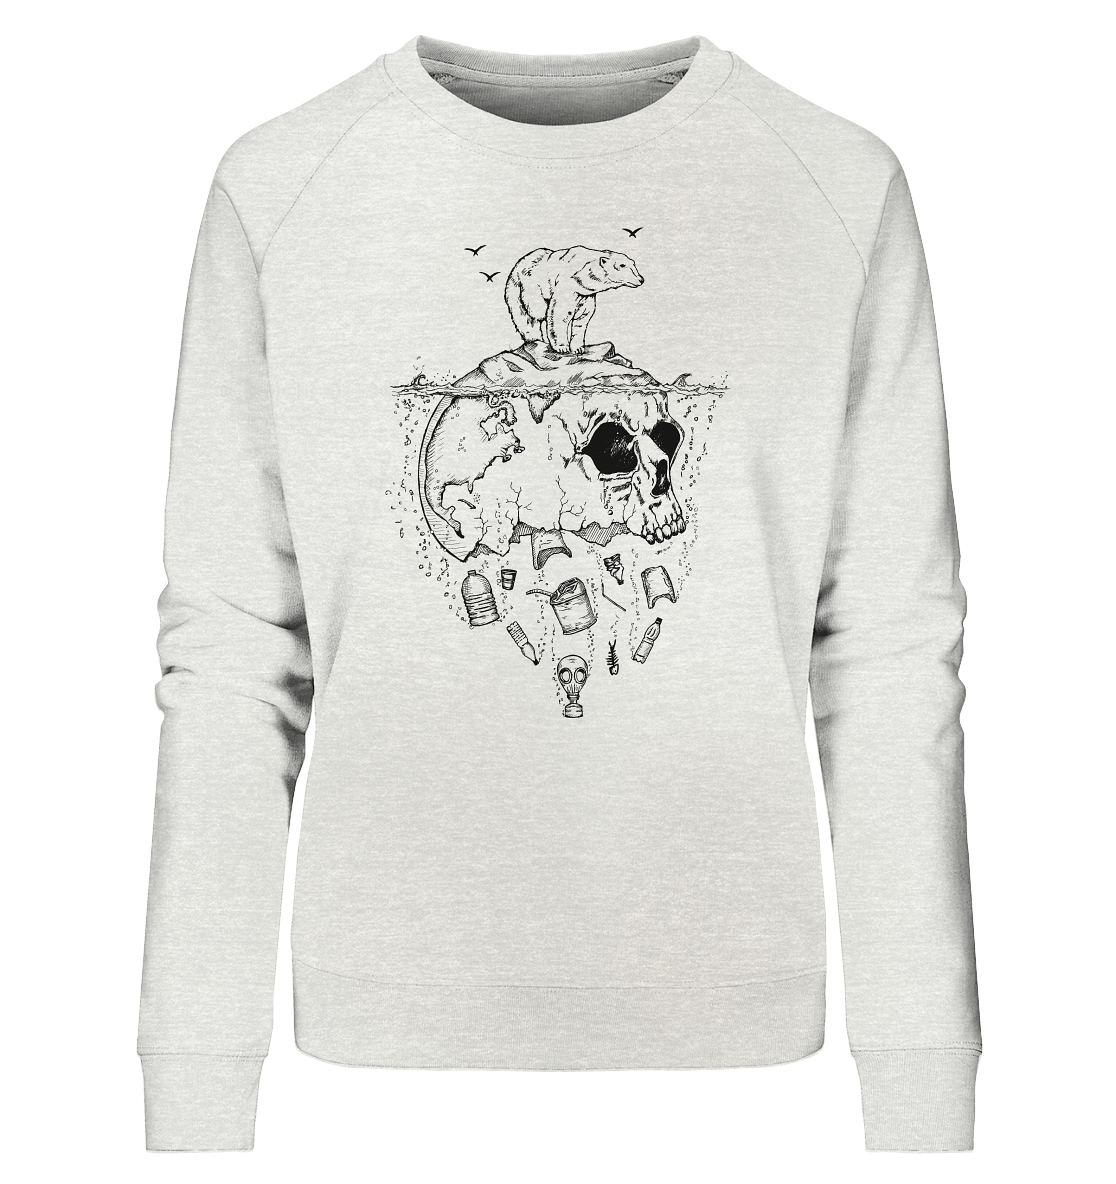 front-ladies-organic-sweatshirt-f2f5f3-1116x-3.png